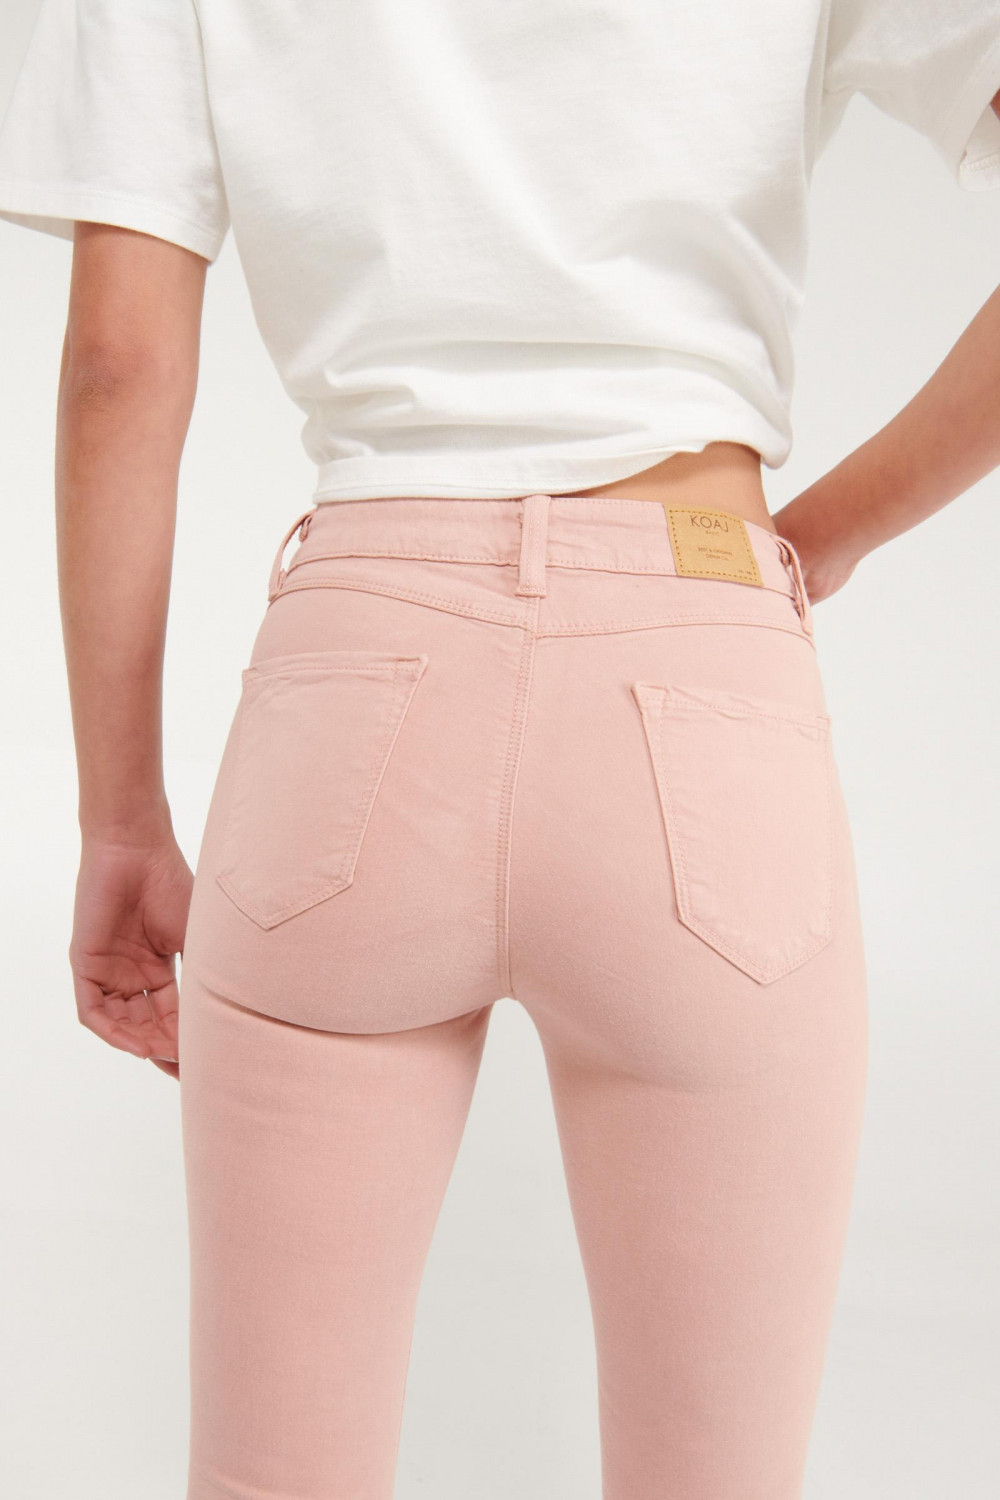 Pantalón jegging rosado claro con tiro alto